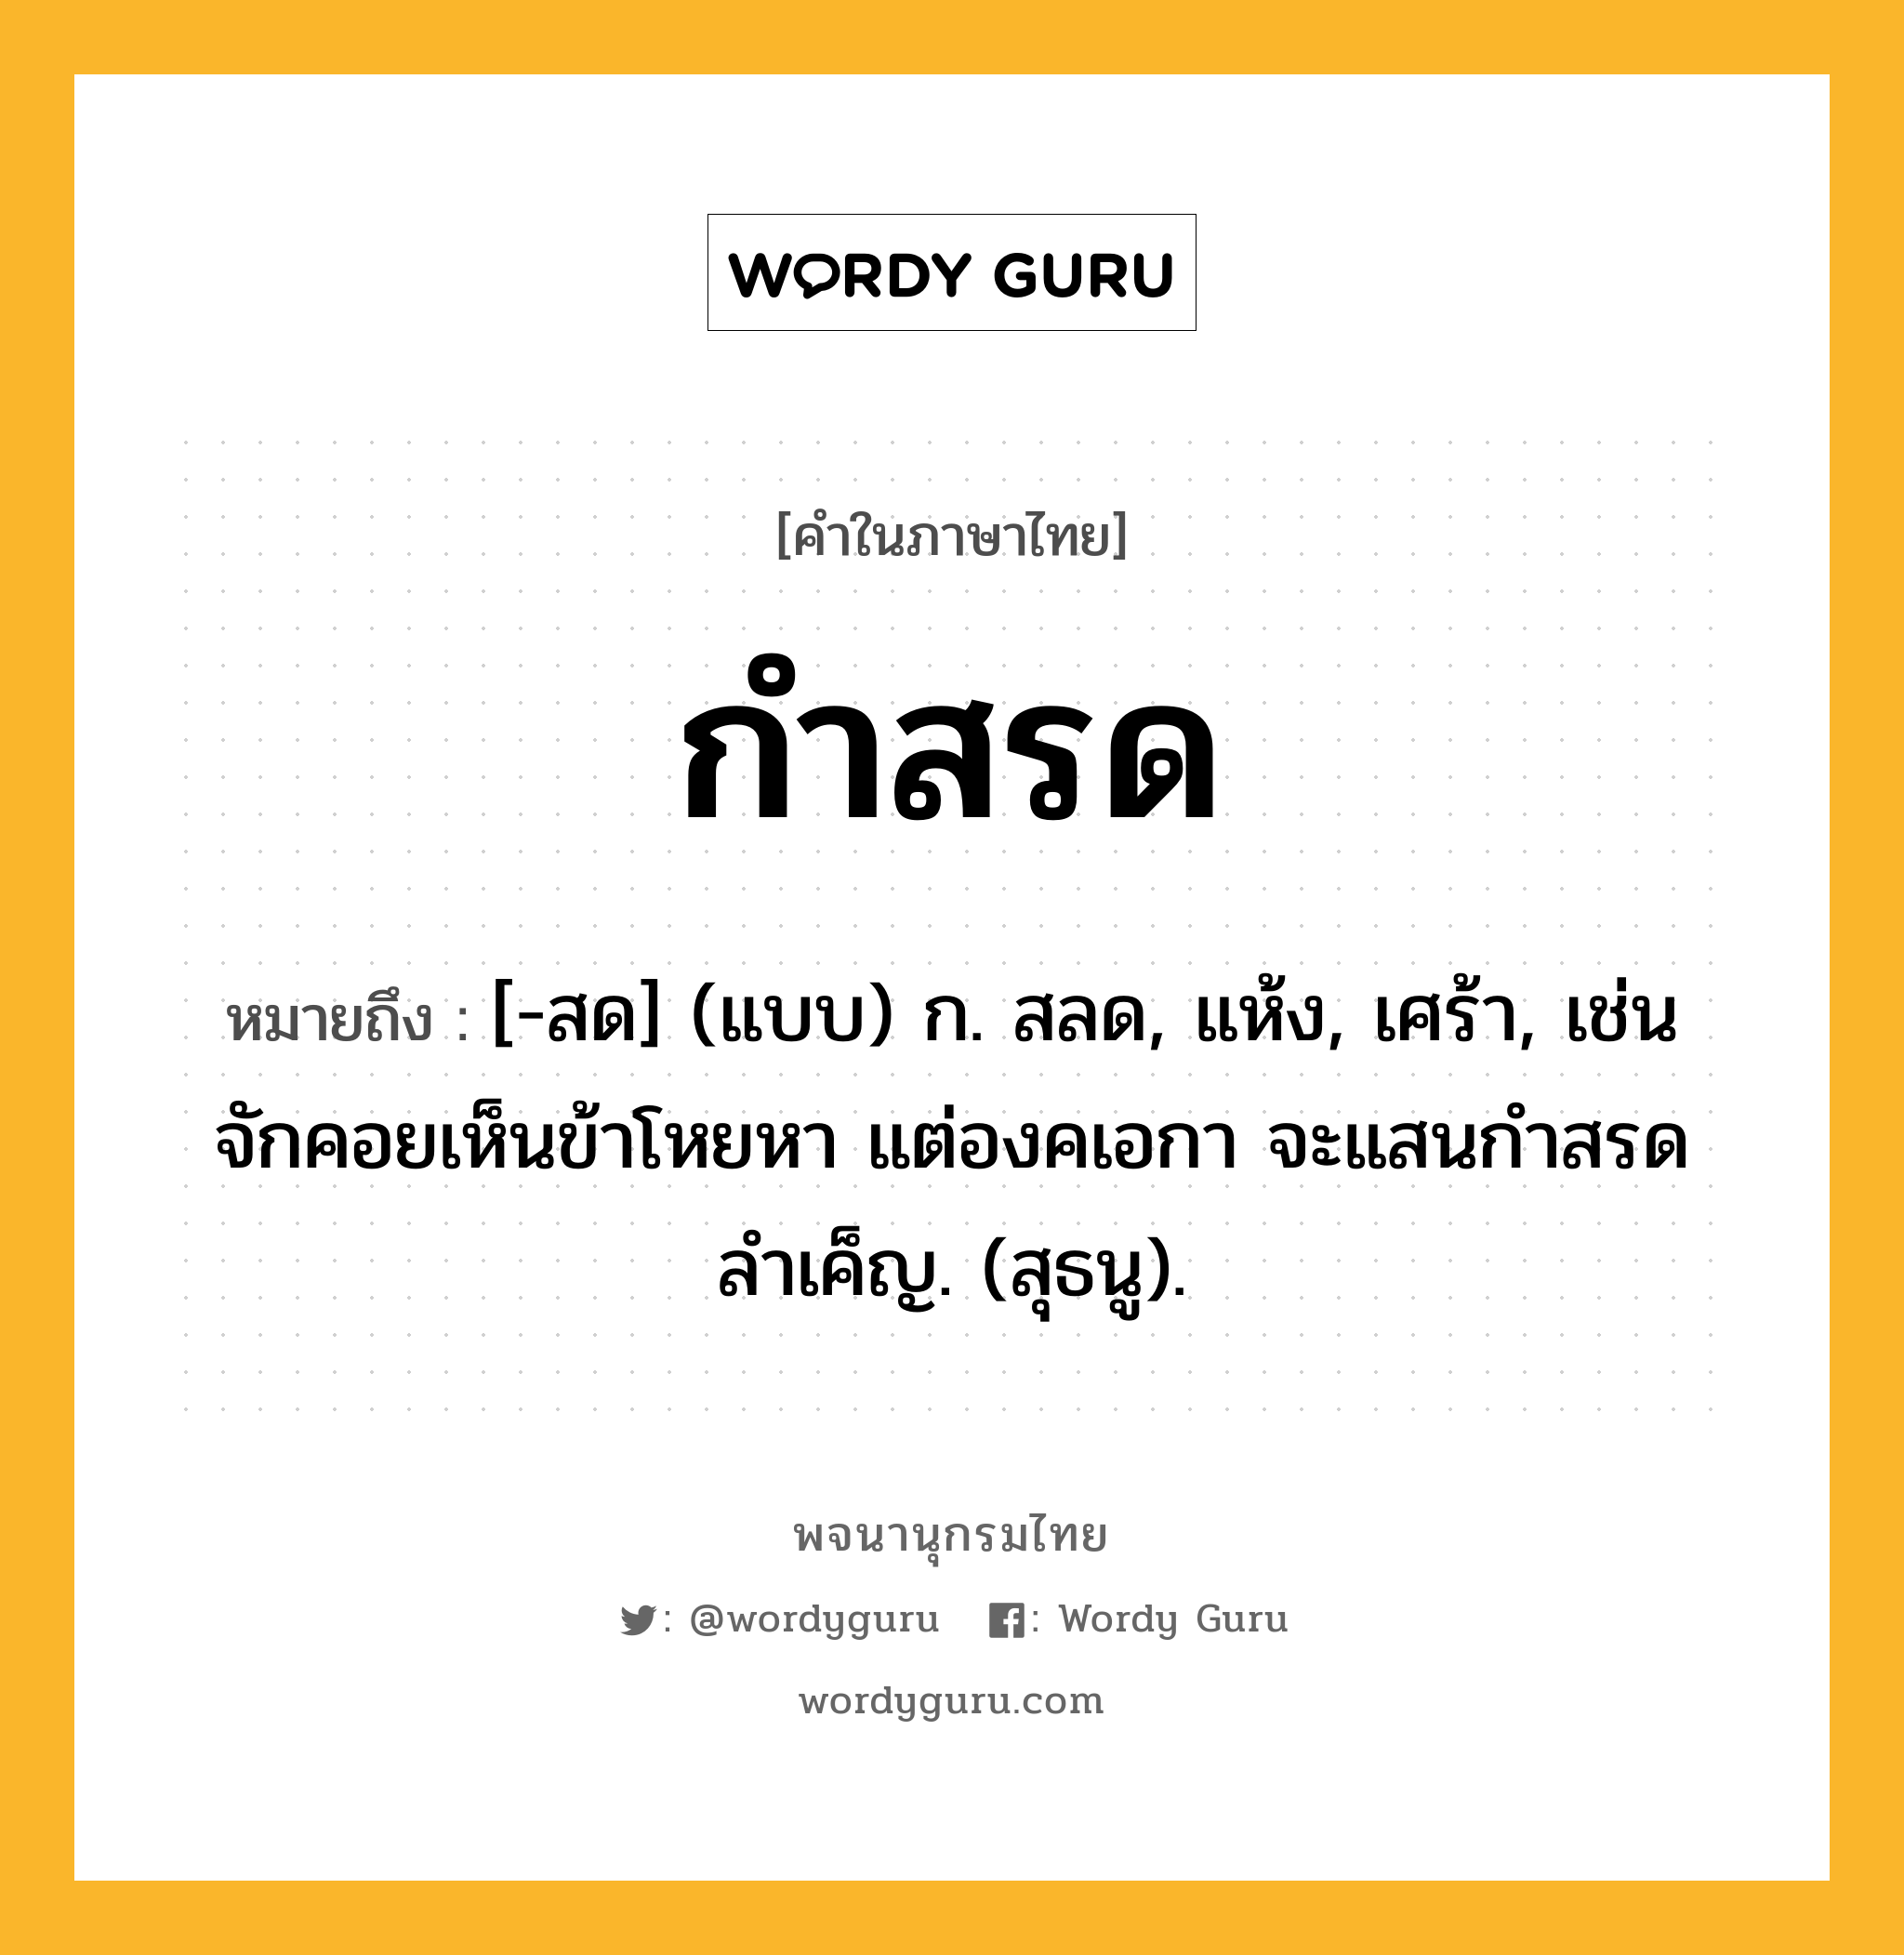 กำสรด ความหมาย หมายถึงอะไร?, คำในภาษาไทย กำสรด หมายถึง [-สด] (แบบ) ก. สลด, แห้ง, เศร้า, เช่น จักคอยเห็นข้าโหยหา แต่องคเอกา จะแสนกำสรดลำเค็ญ. (สุธนู).